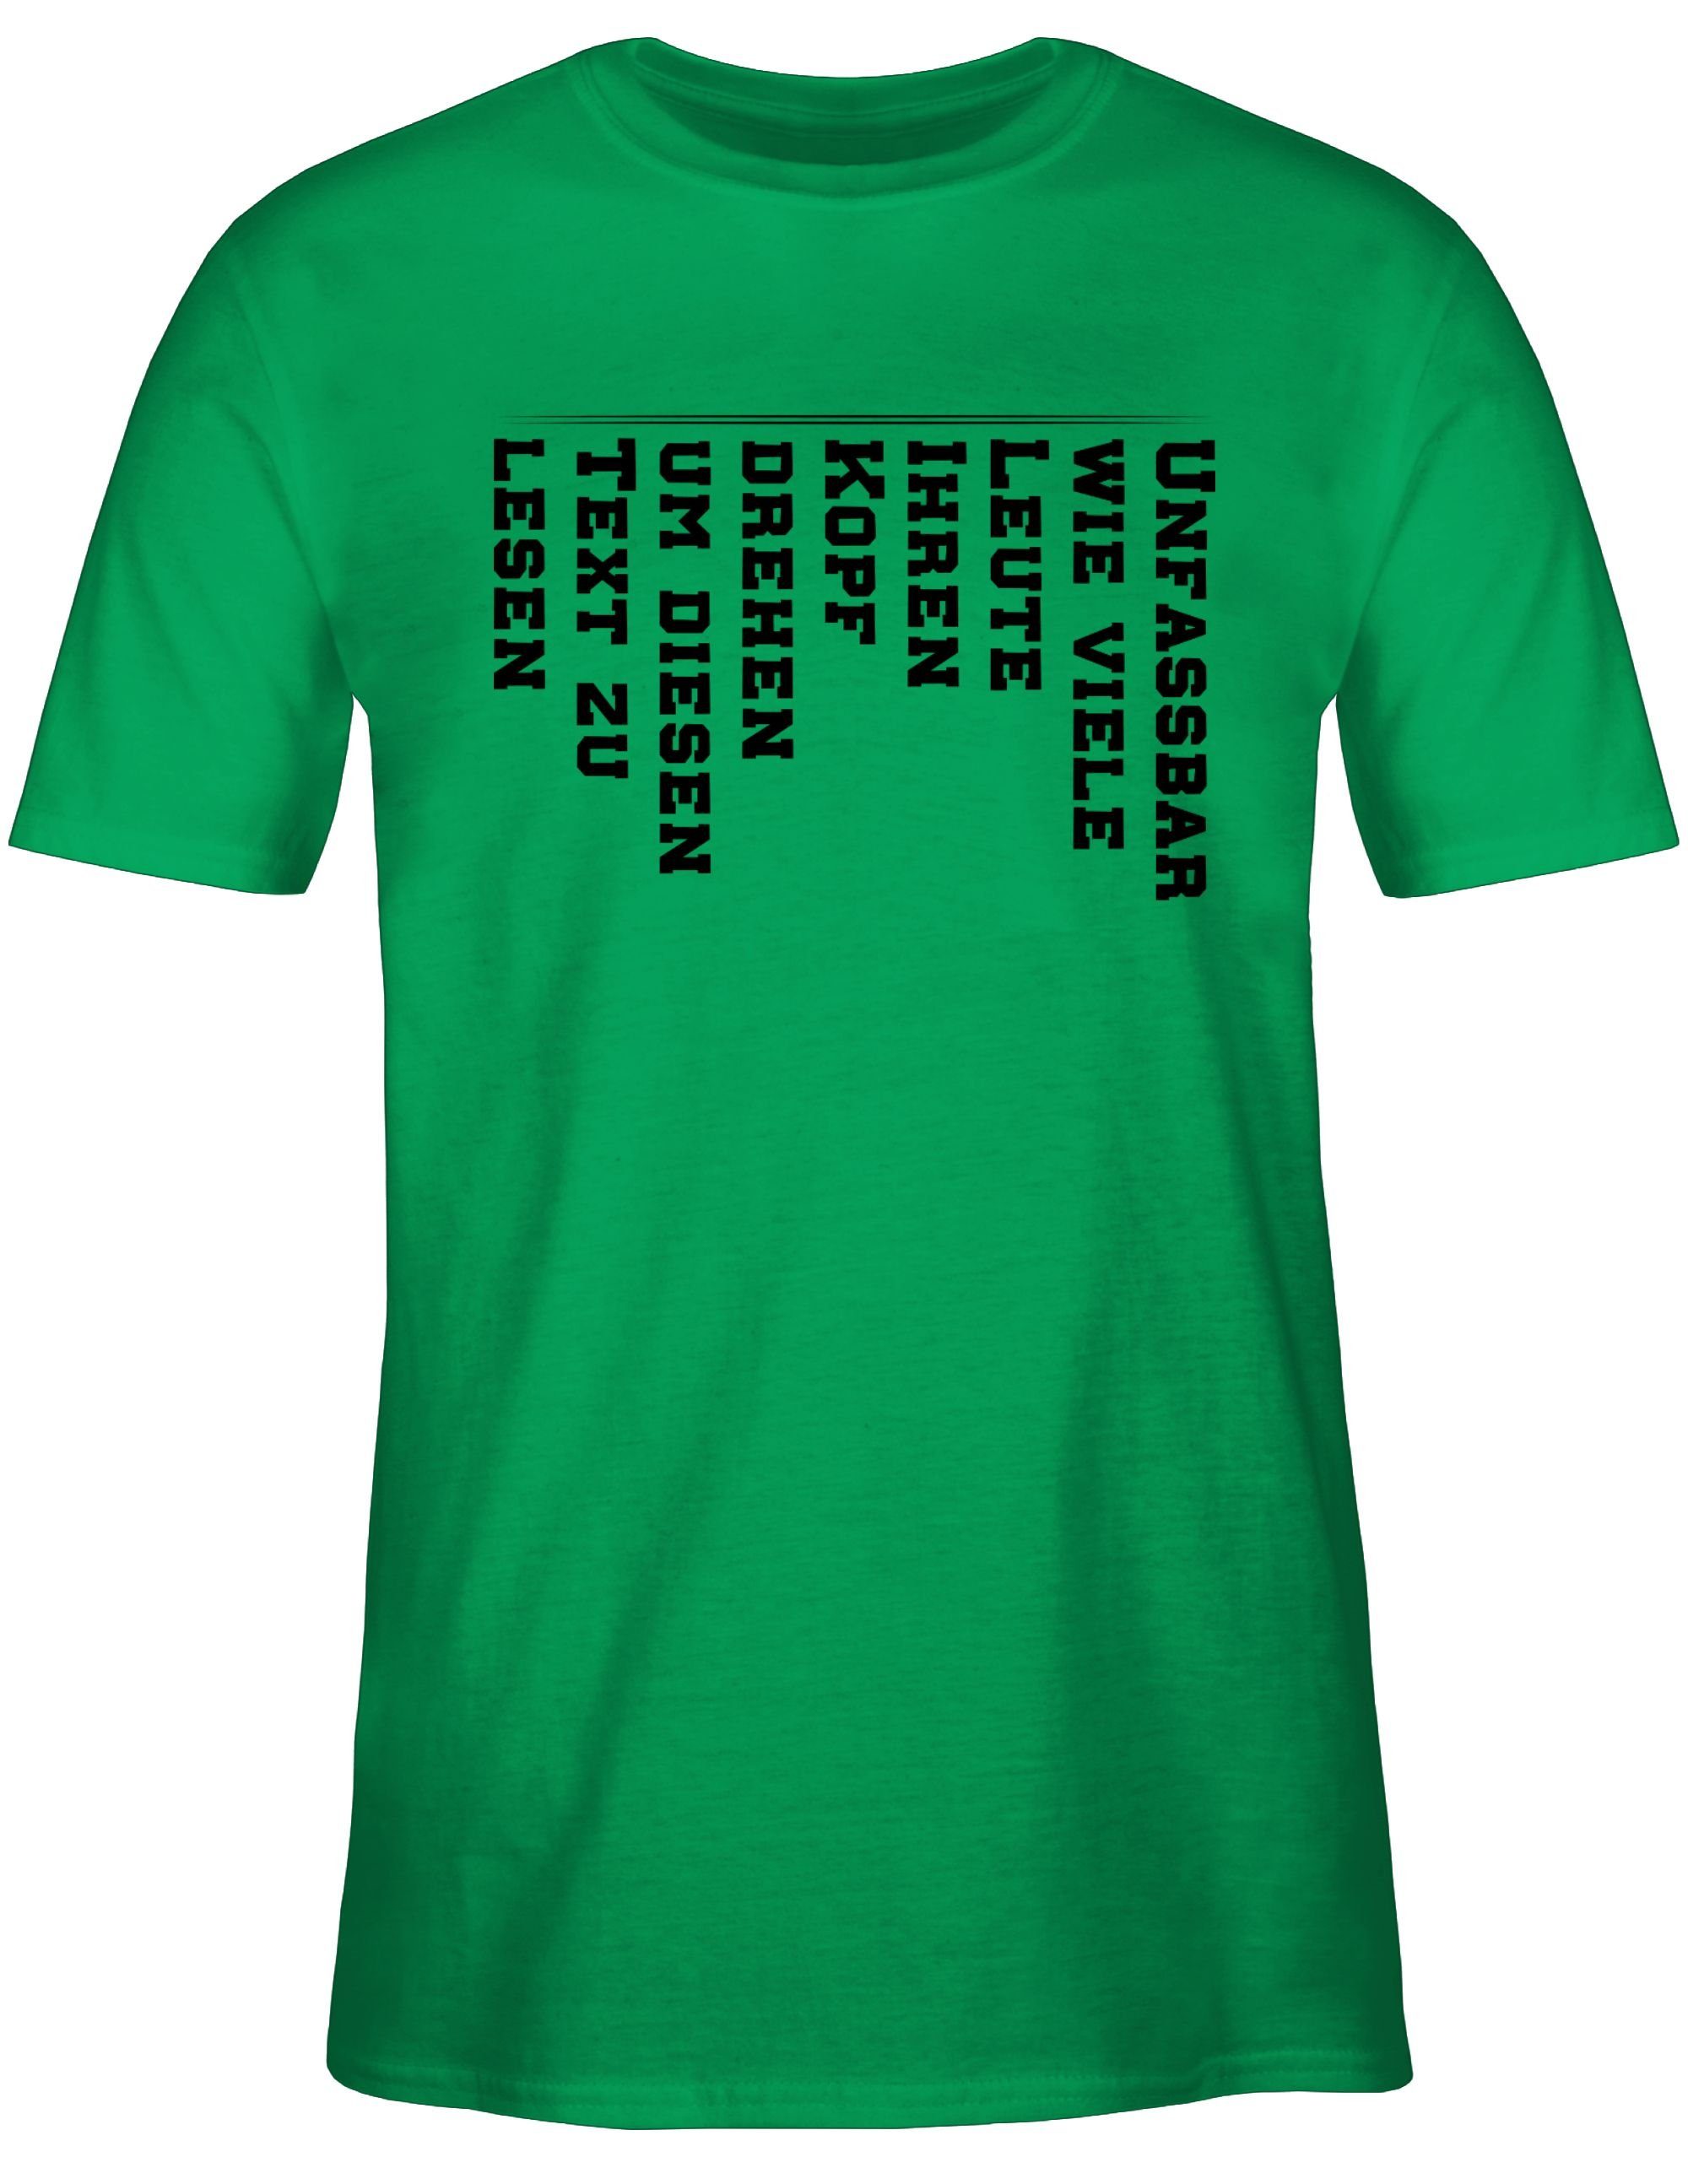 drehen mit lesen zu Leute Statement 3 Sprüche viele Text Kopf den diesen Unfassbar Shirtracer Grün T-Shirt wie Spruch um